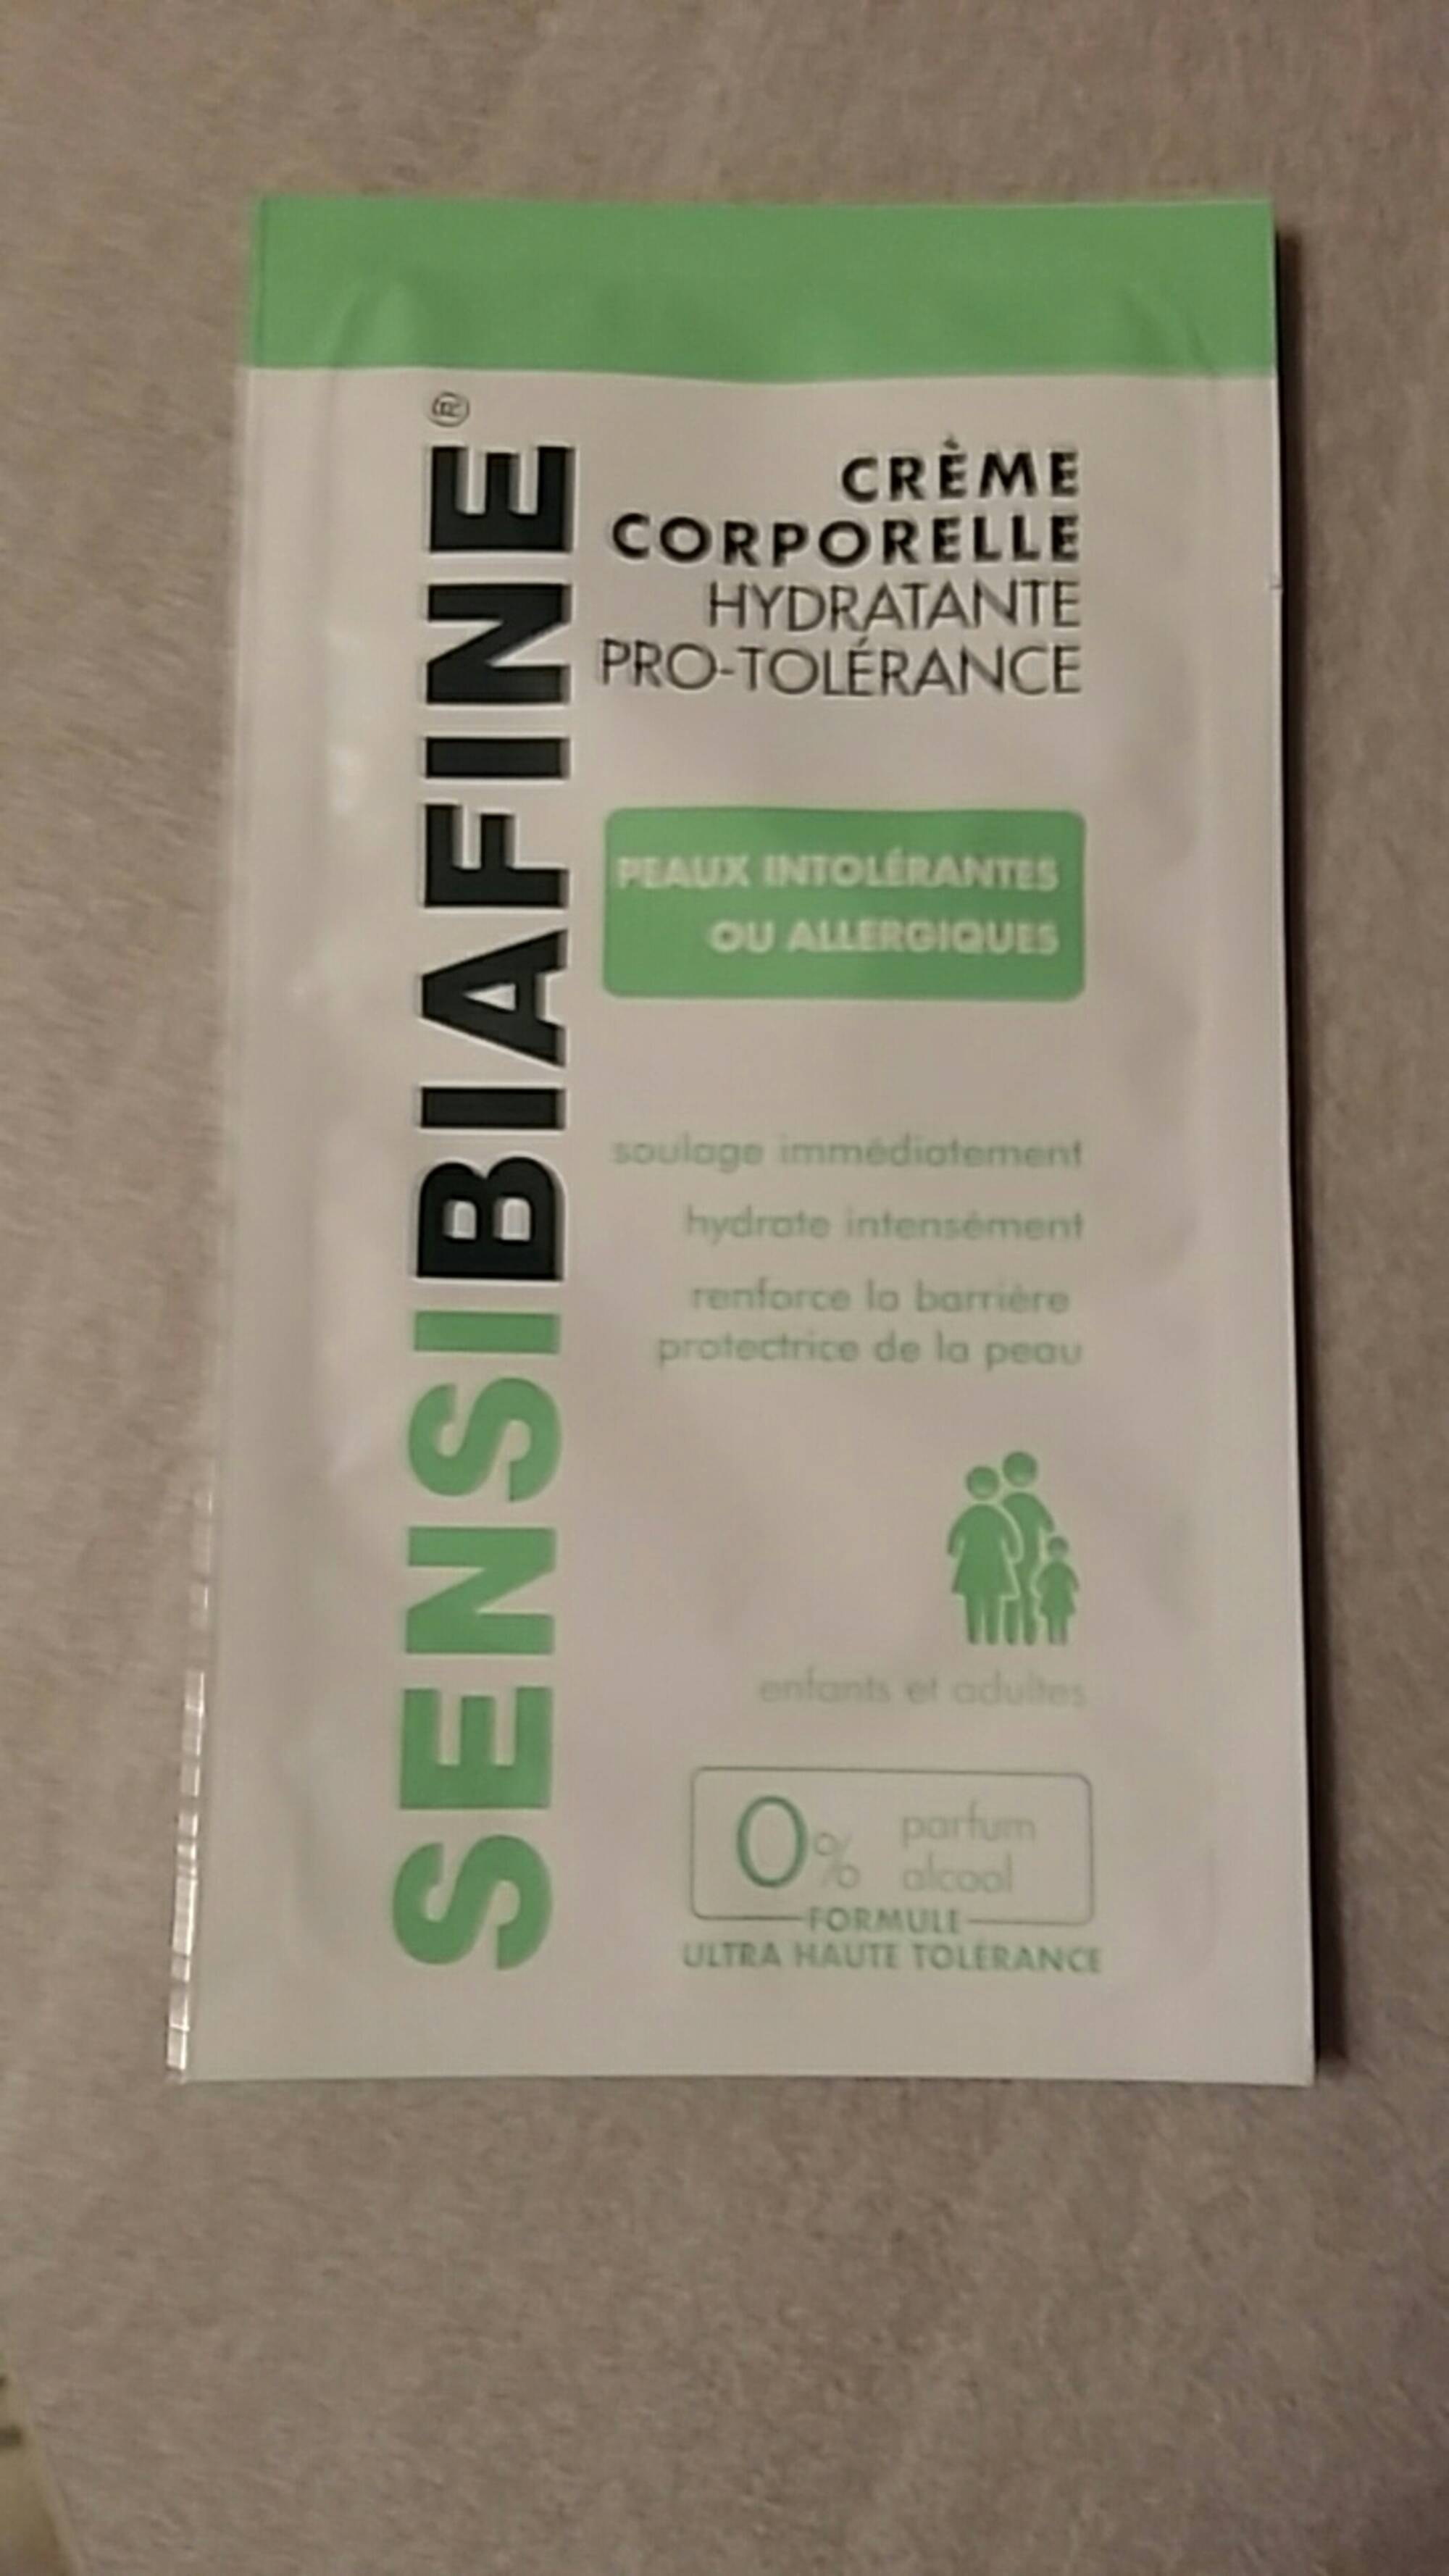 LES DERMO-COSMÉTIQUES DE BIAFINE - Sensibiafine - Crème corporelle hydratante pro-tolérance